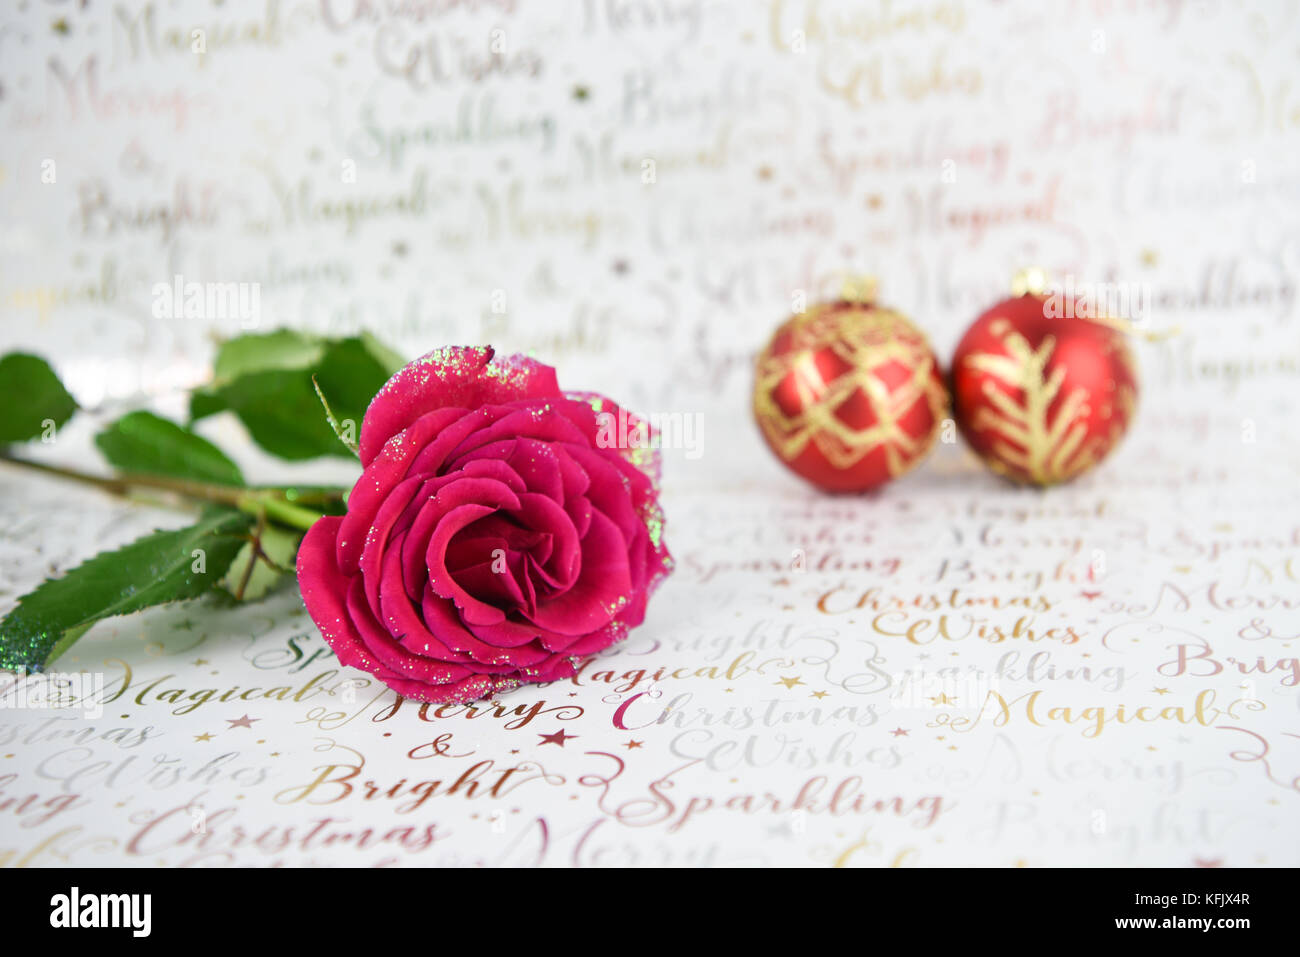 Imagen fotografía de navidad con purpurina rosa roja y flor de oro rojo brillante de adornos de navidad adornos del árbol de brillante color blanco sobre fondo de papel enrollado Foto de stock